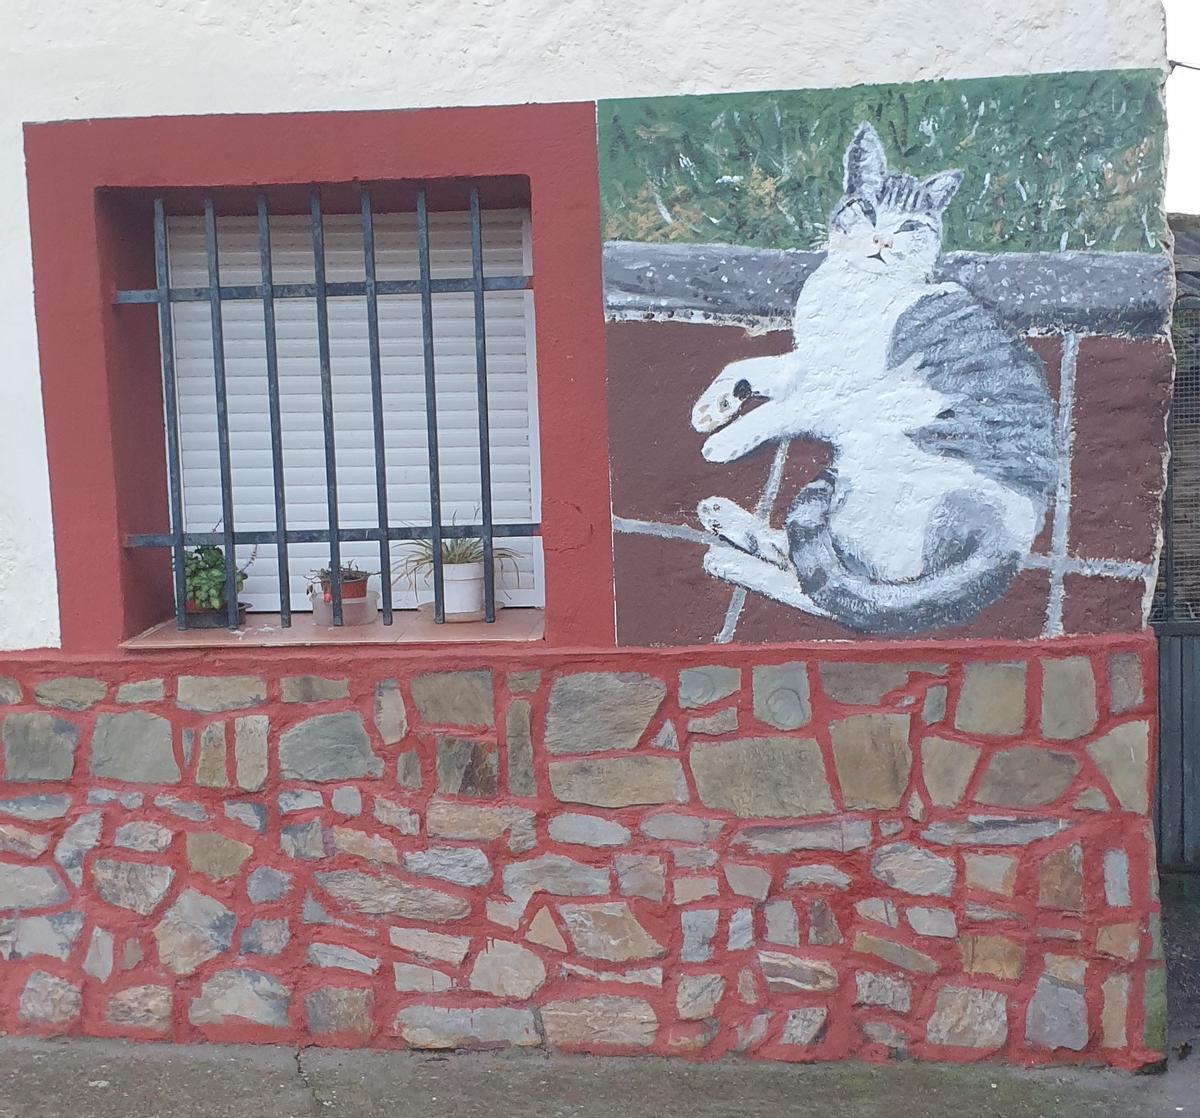 Un gato recostado protagoniza uno de los tres últimos murales realizados en Villaflor.